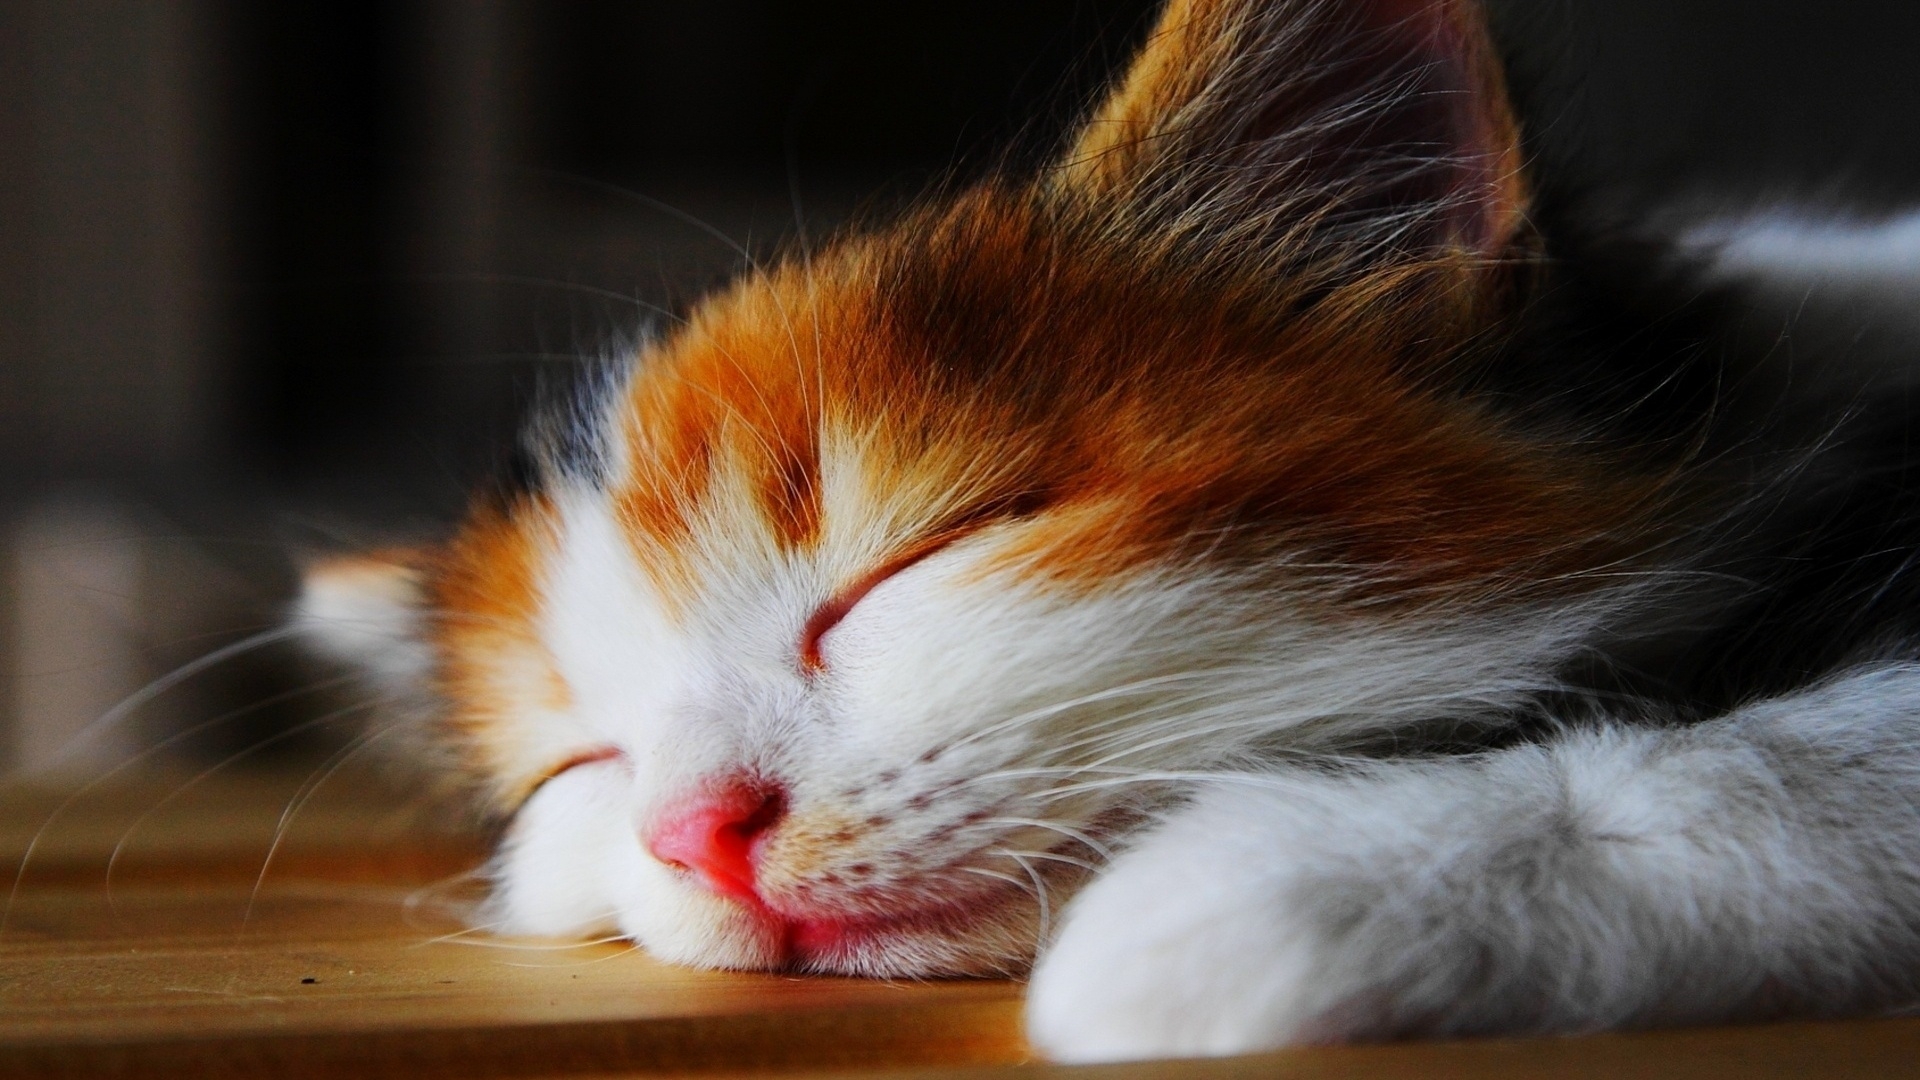 Amazingly Cute Sleepy Kitten  for 1920 x 1080 HDTV 1080p resolution